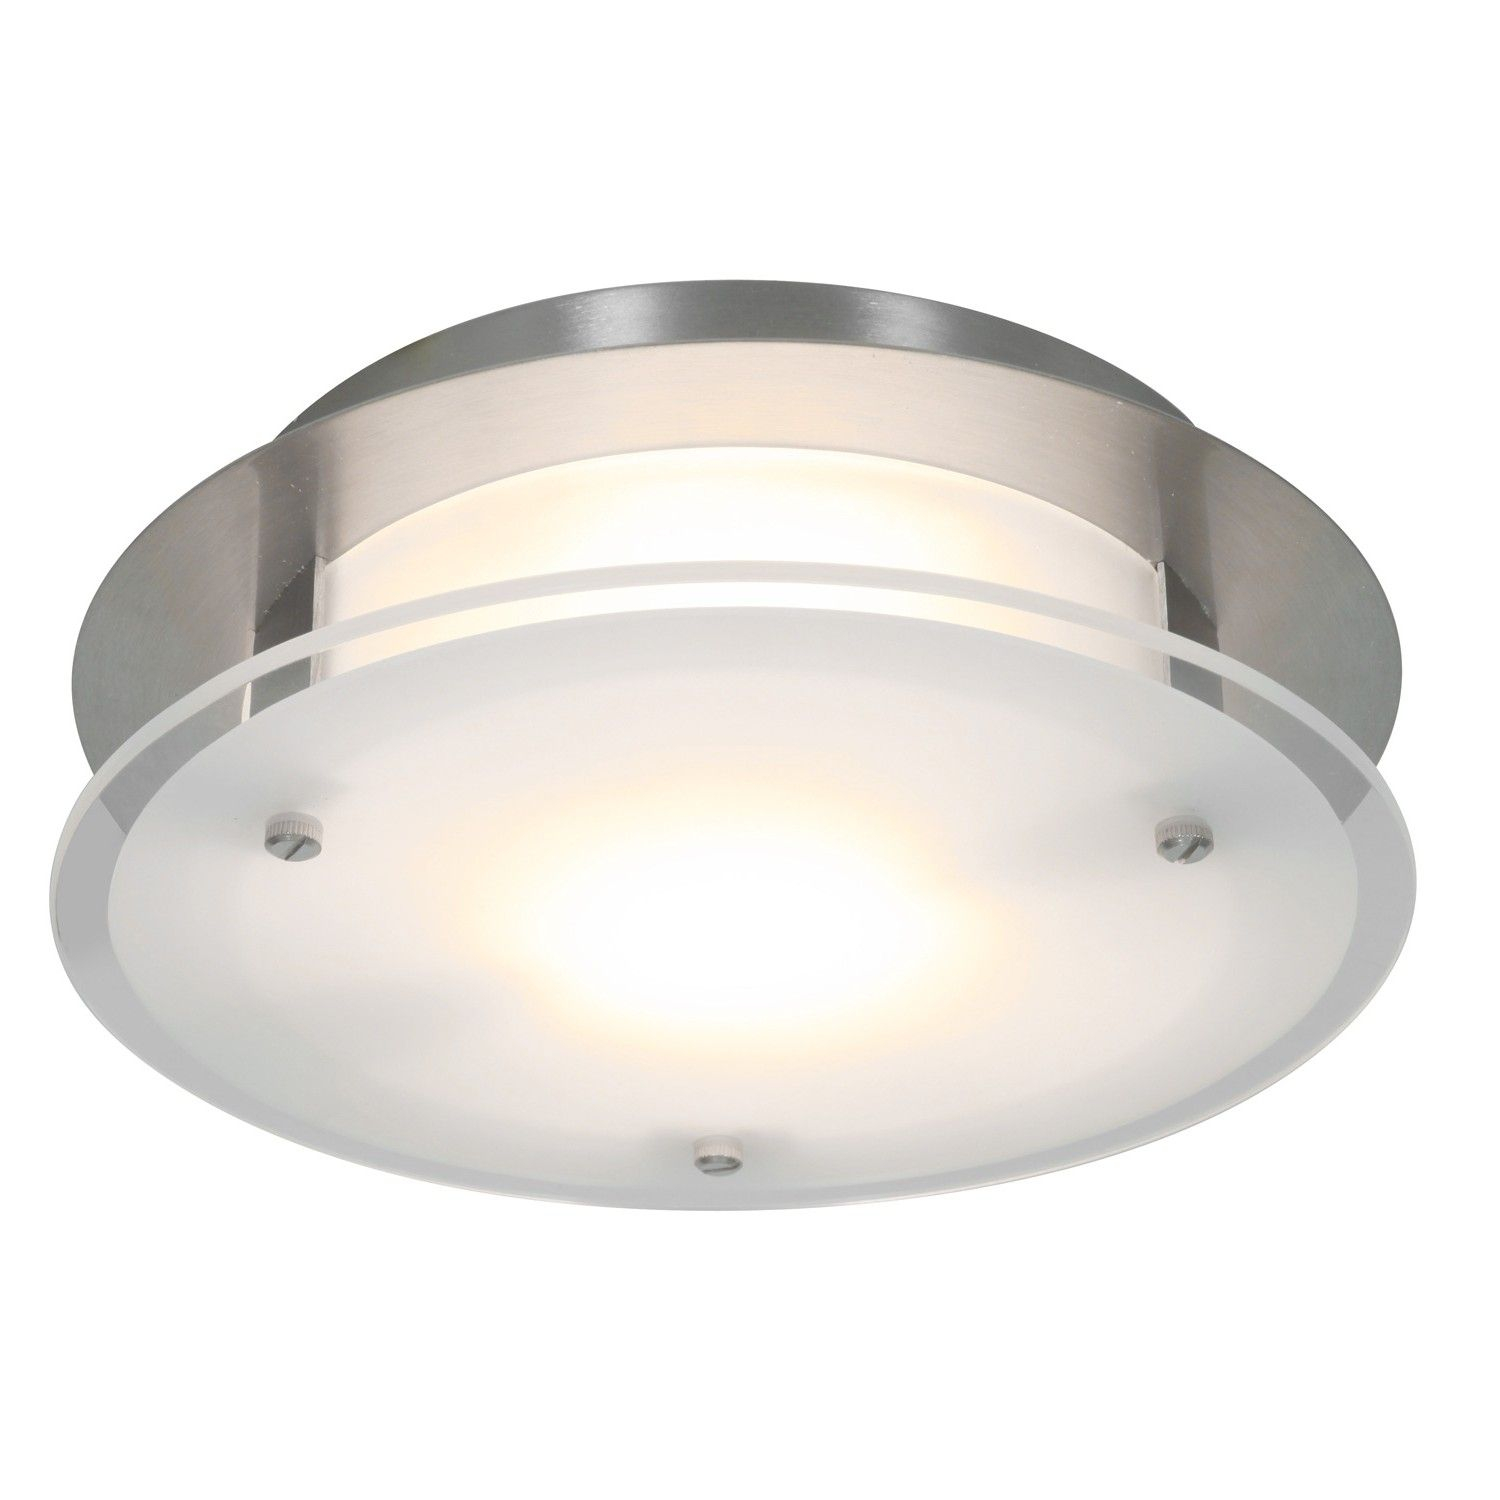 Luxury Ductless Bathroom Fan With Light Bathroom Fan Light regarding measurements 1500 X 1500